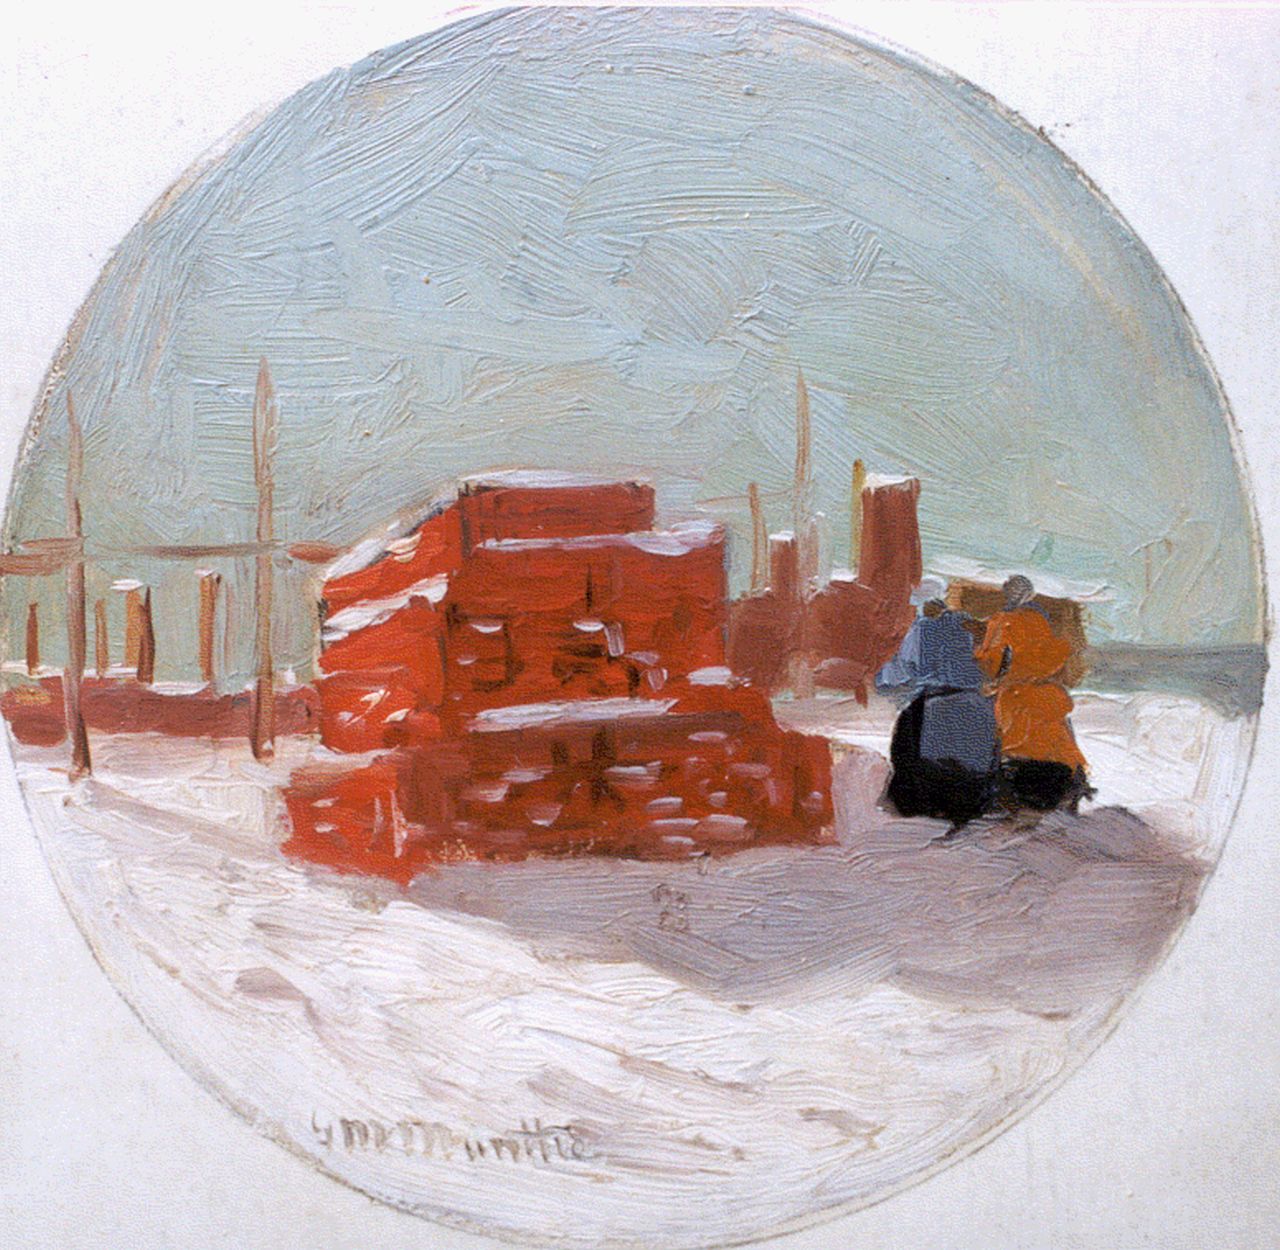 Munthe G.A.L.  | Gerhard Arij Ludwig 'Morgenstjerne' Munthe, A beach in winter, 16.9 x 16.0 cm, signed l.l.